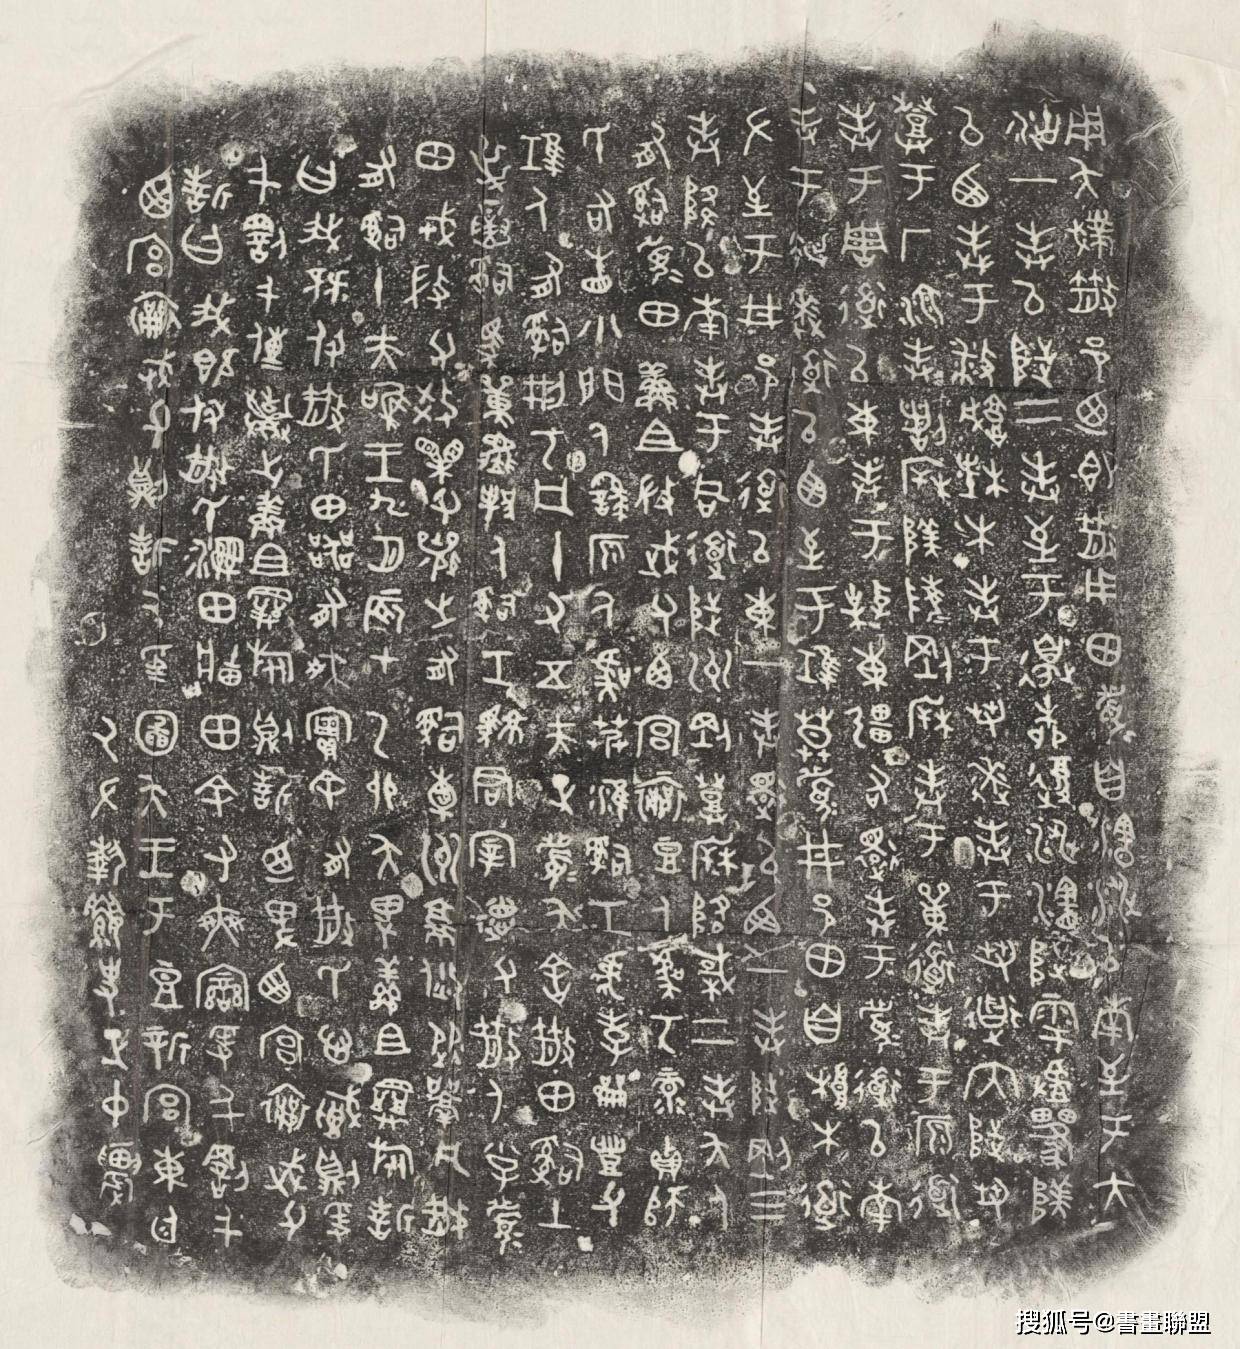 中国5000年绘画史——碑拓_手机搜狐网